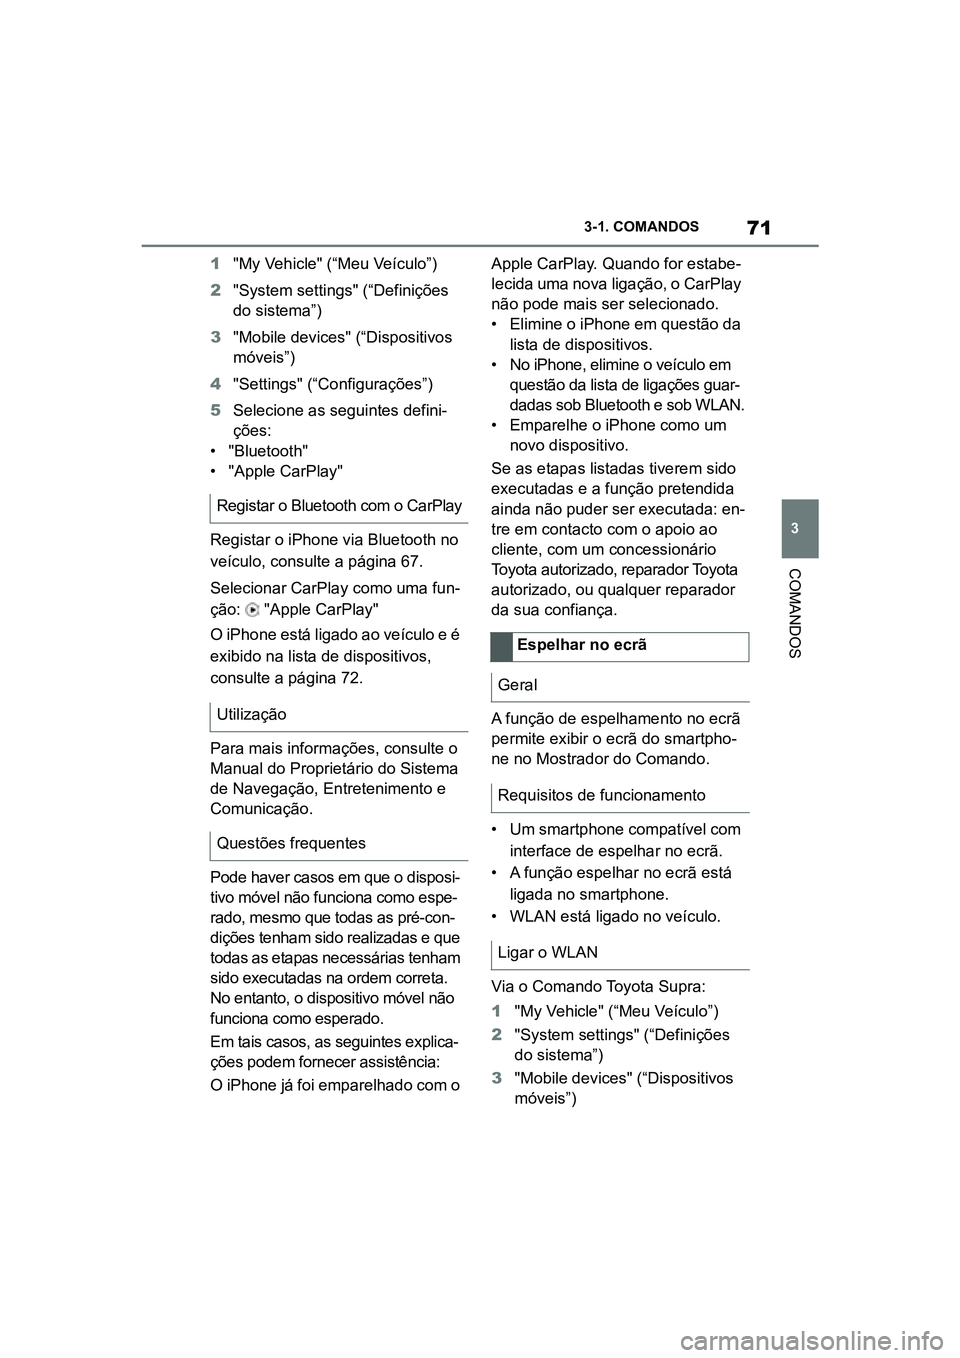 TOYOTA SUPRA 2019  Manual de utilização (in Portuguese) 71
3
Supra Owner's Manual 3-1. COMANDOS
COMANDOS
1
"My Vehicle" (“Meu Veículo”)
2 "System settings" (“Definições 
d

o sistema”)
3 "Mobile devices" (“Dispositi